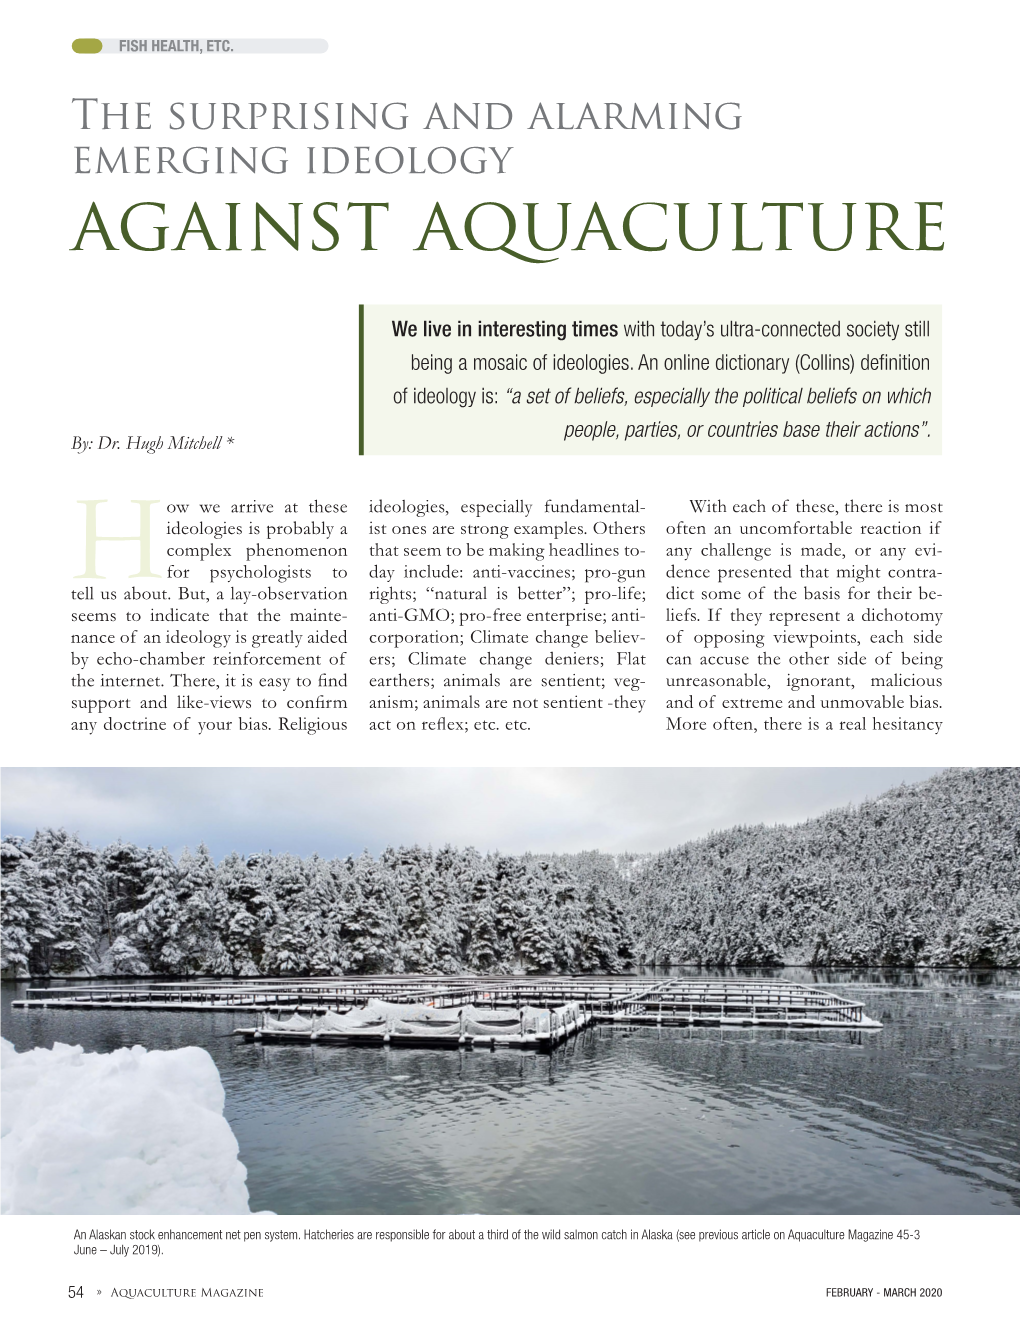 Against Aquaculture